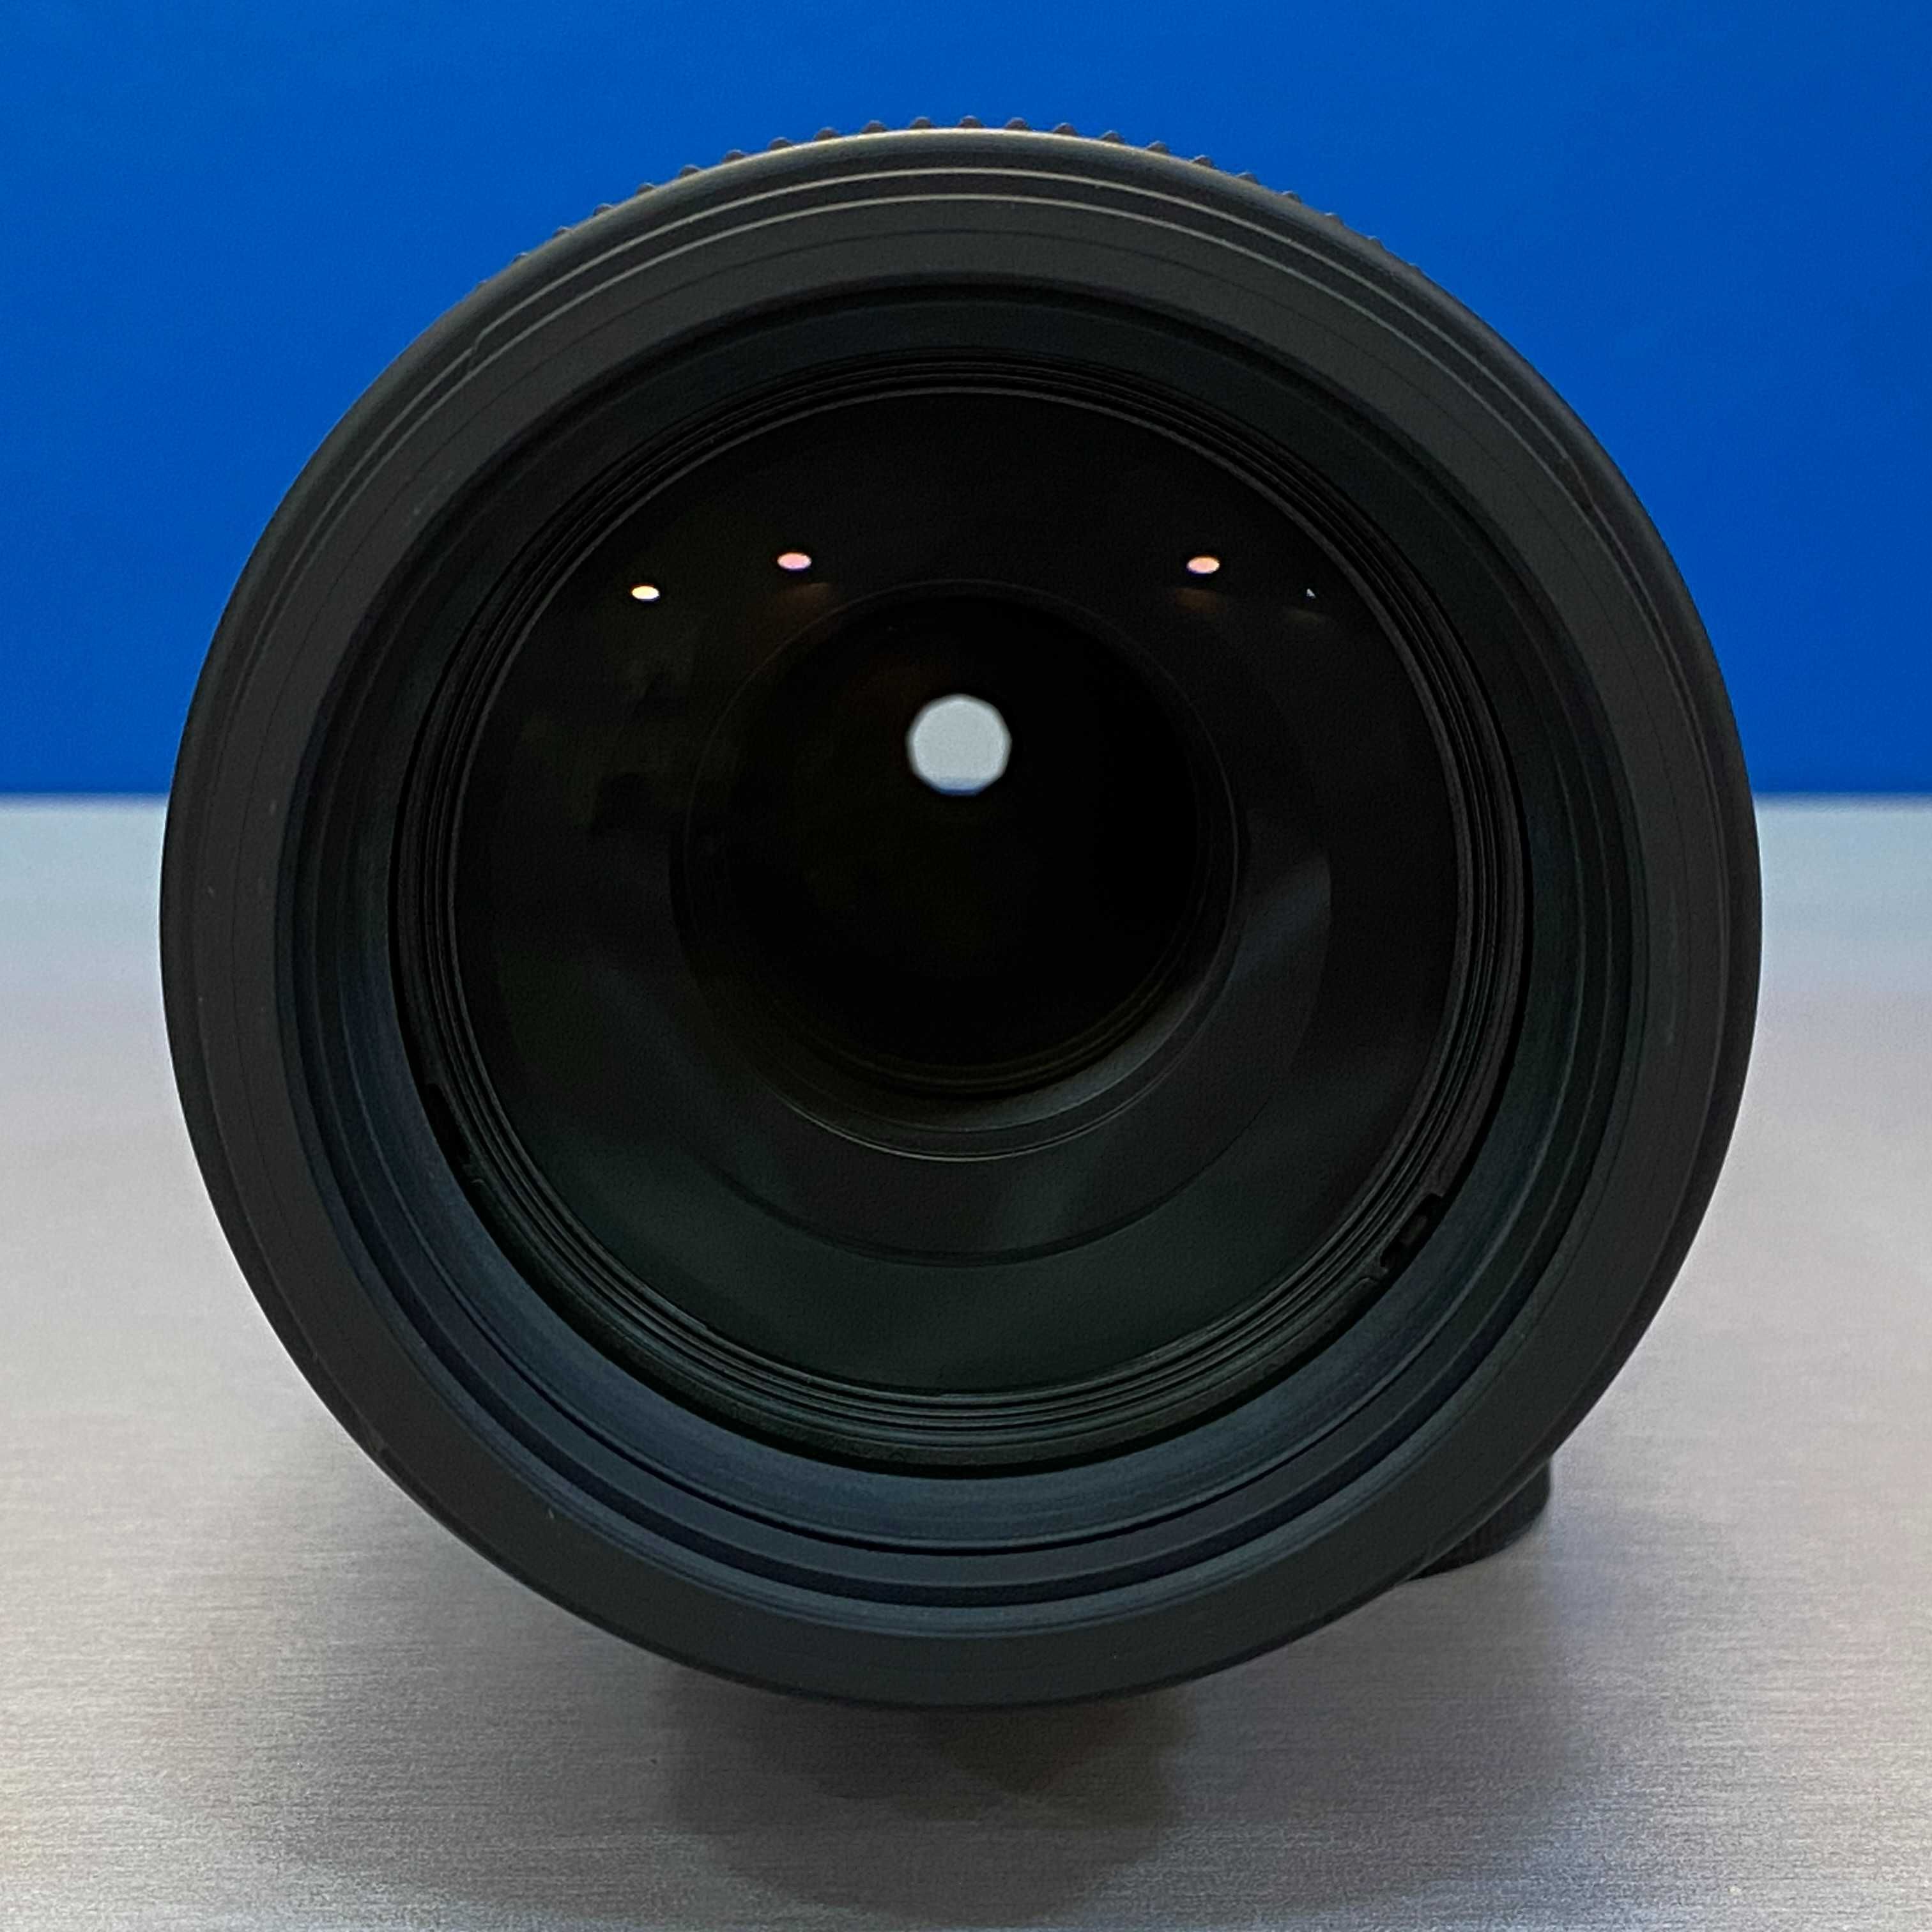 Sigma 100-400mm f/5-6.3 DG DN OS Contemporary (Fujifilm) - NOVA